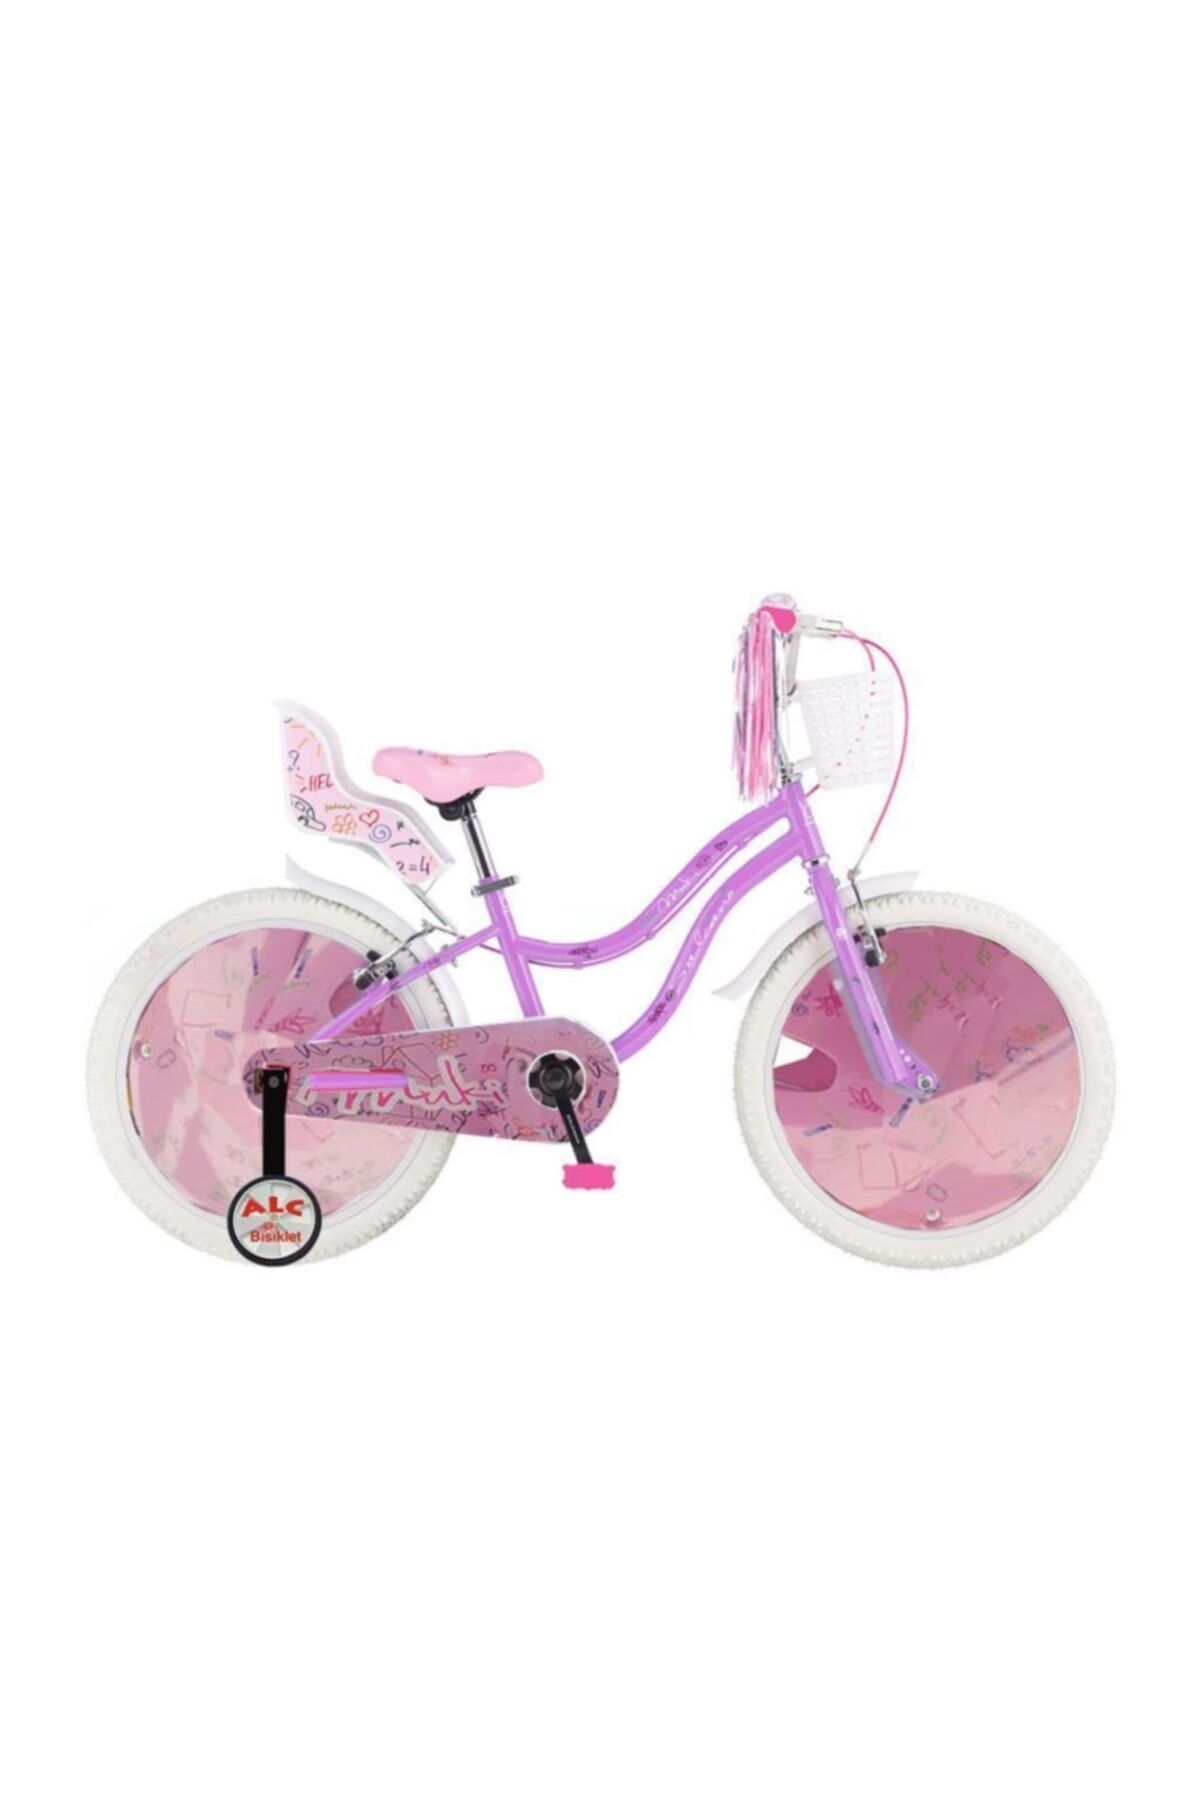 Salcano Muki 20 Jant Kız Çocuk Bisikleti (120/140 CM BOY)-lila Beyaz